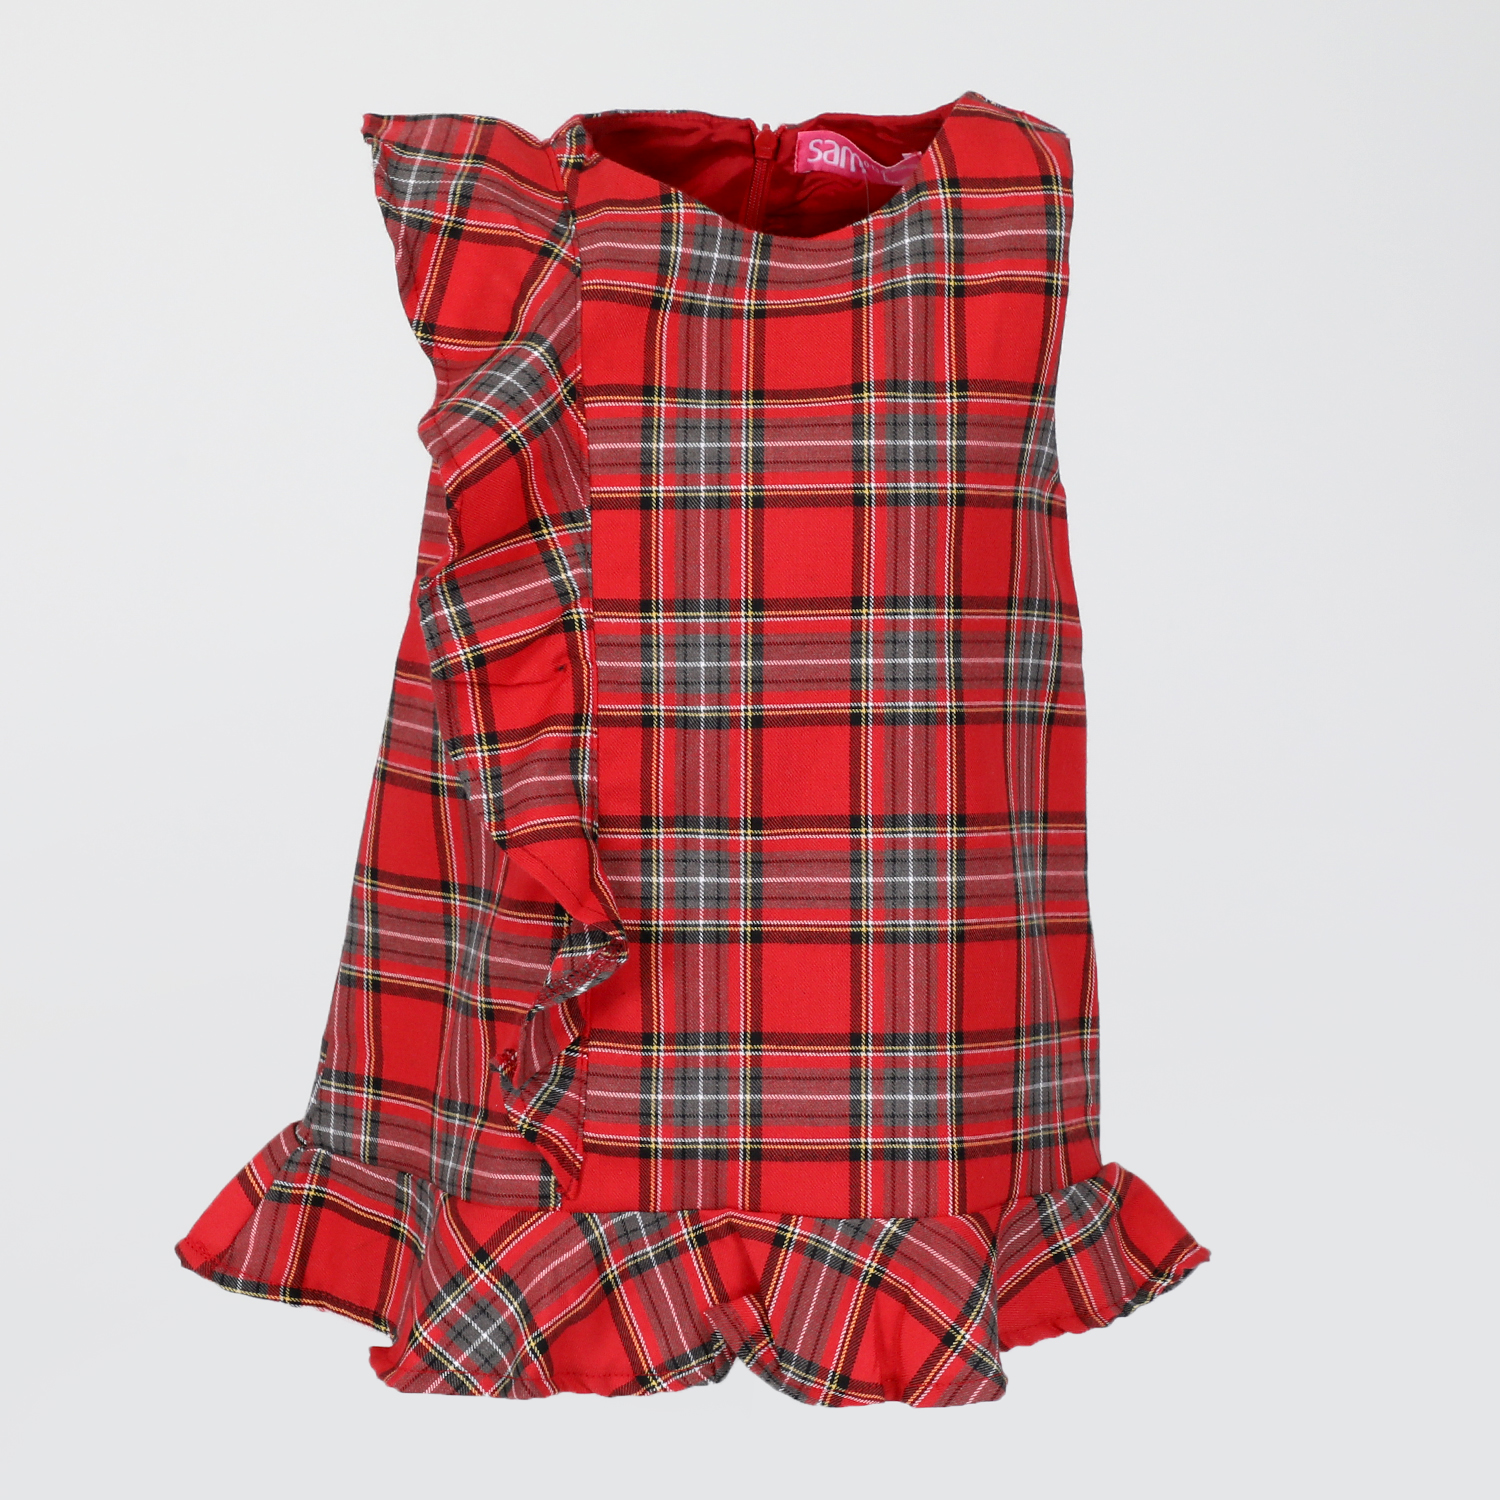 Παιδικά/Girls/Ρούχα/Φορέματα Κοντομάνικα-Αμάνικα SAM 0-13 - Παιδικό φόρεμα SAM 0-13 κόκκινο καρό